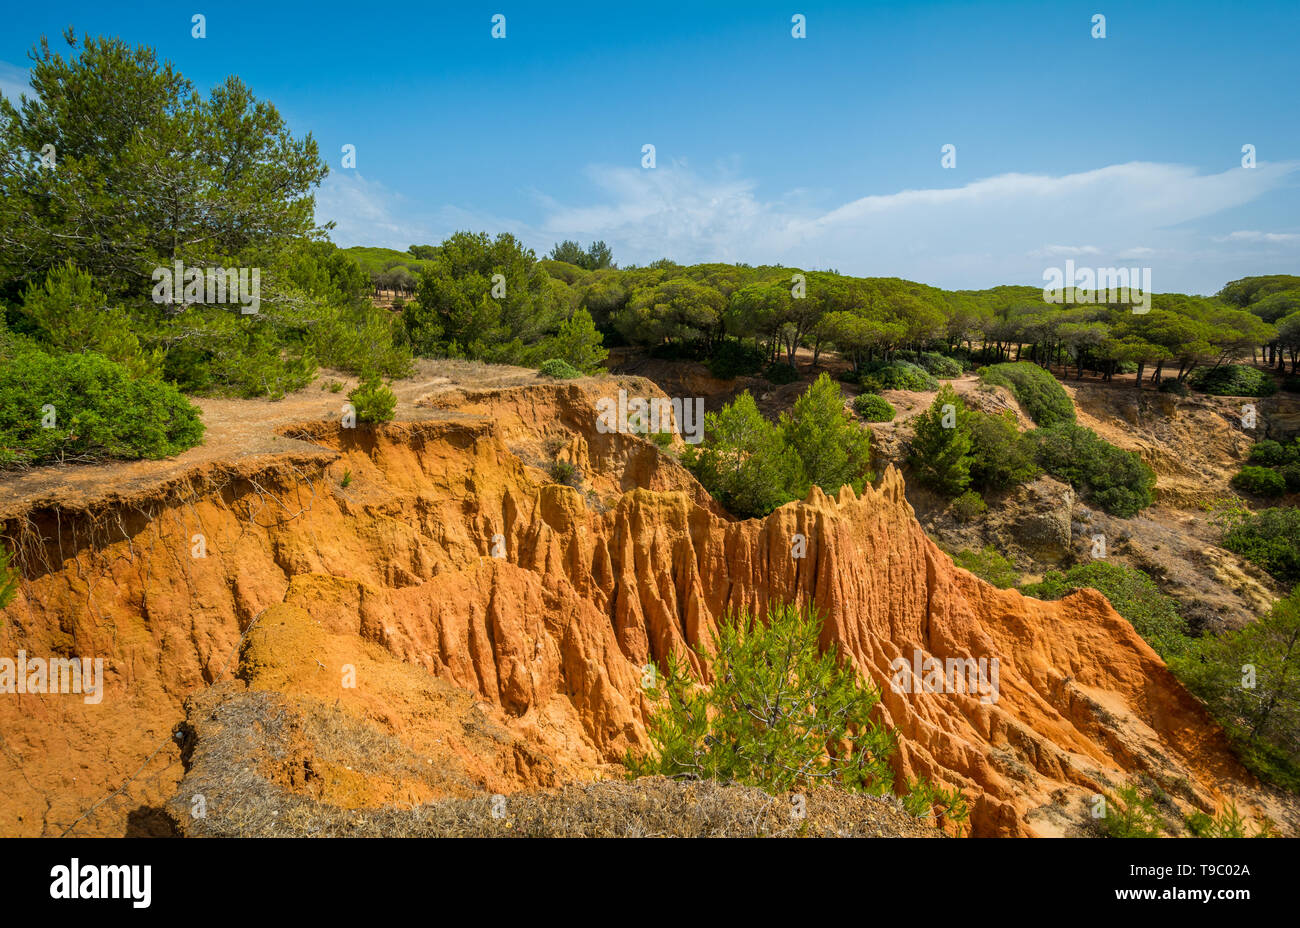 Le formazioni rocciose a Praia da Falesia, nei pressi di Albufeira. Algarve, Portogallo. Foto Stock